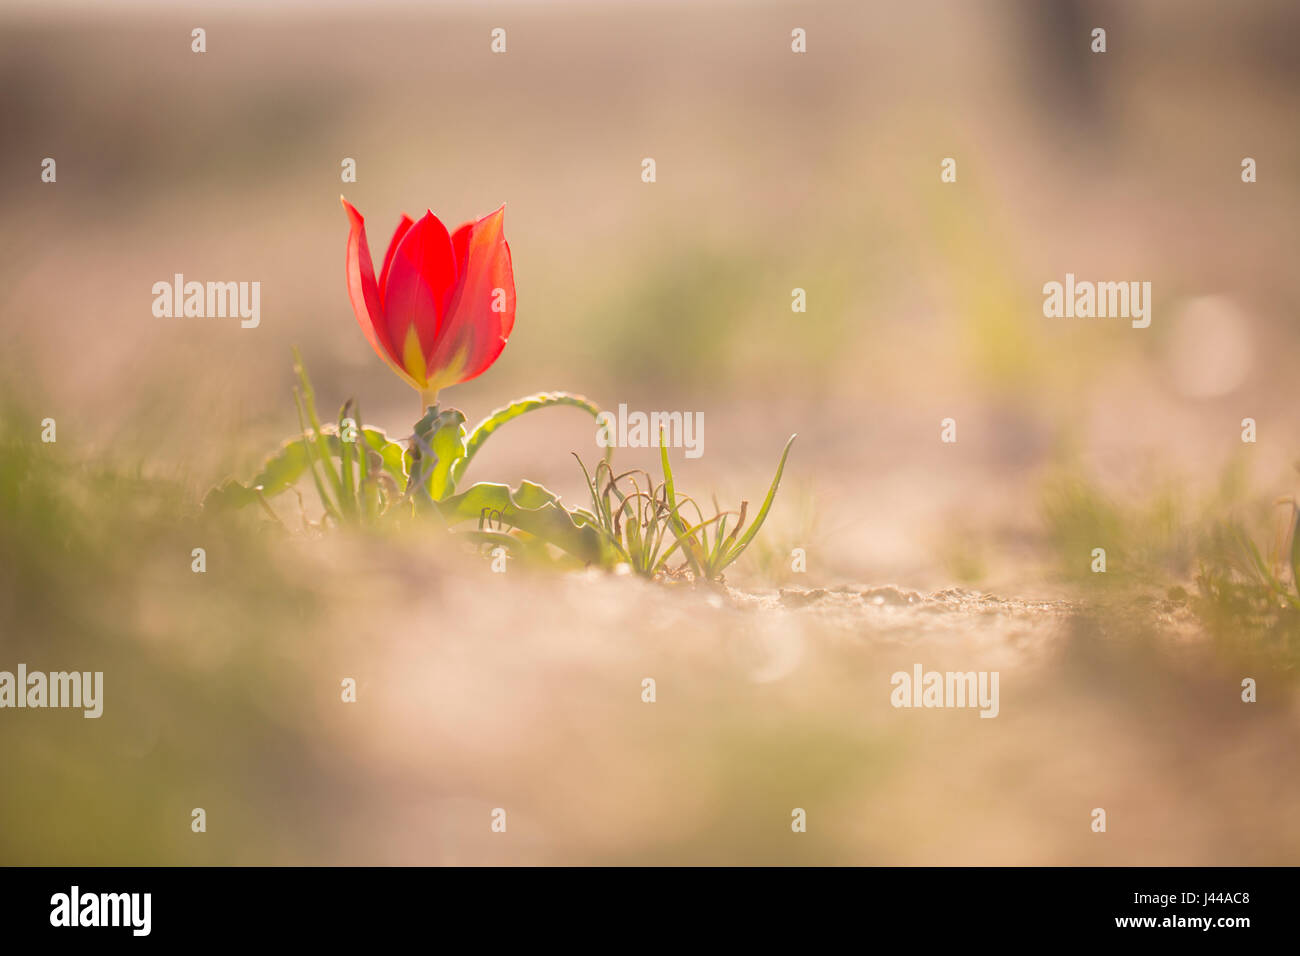 Désert rouge Tulip (Tulipa) systola photographié dans le désert du Néguev, Israël en mars Banque D'Images